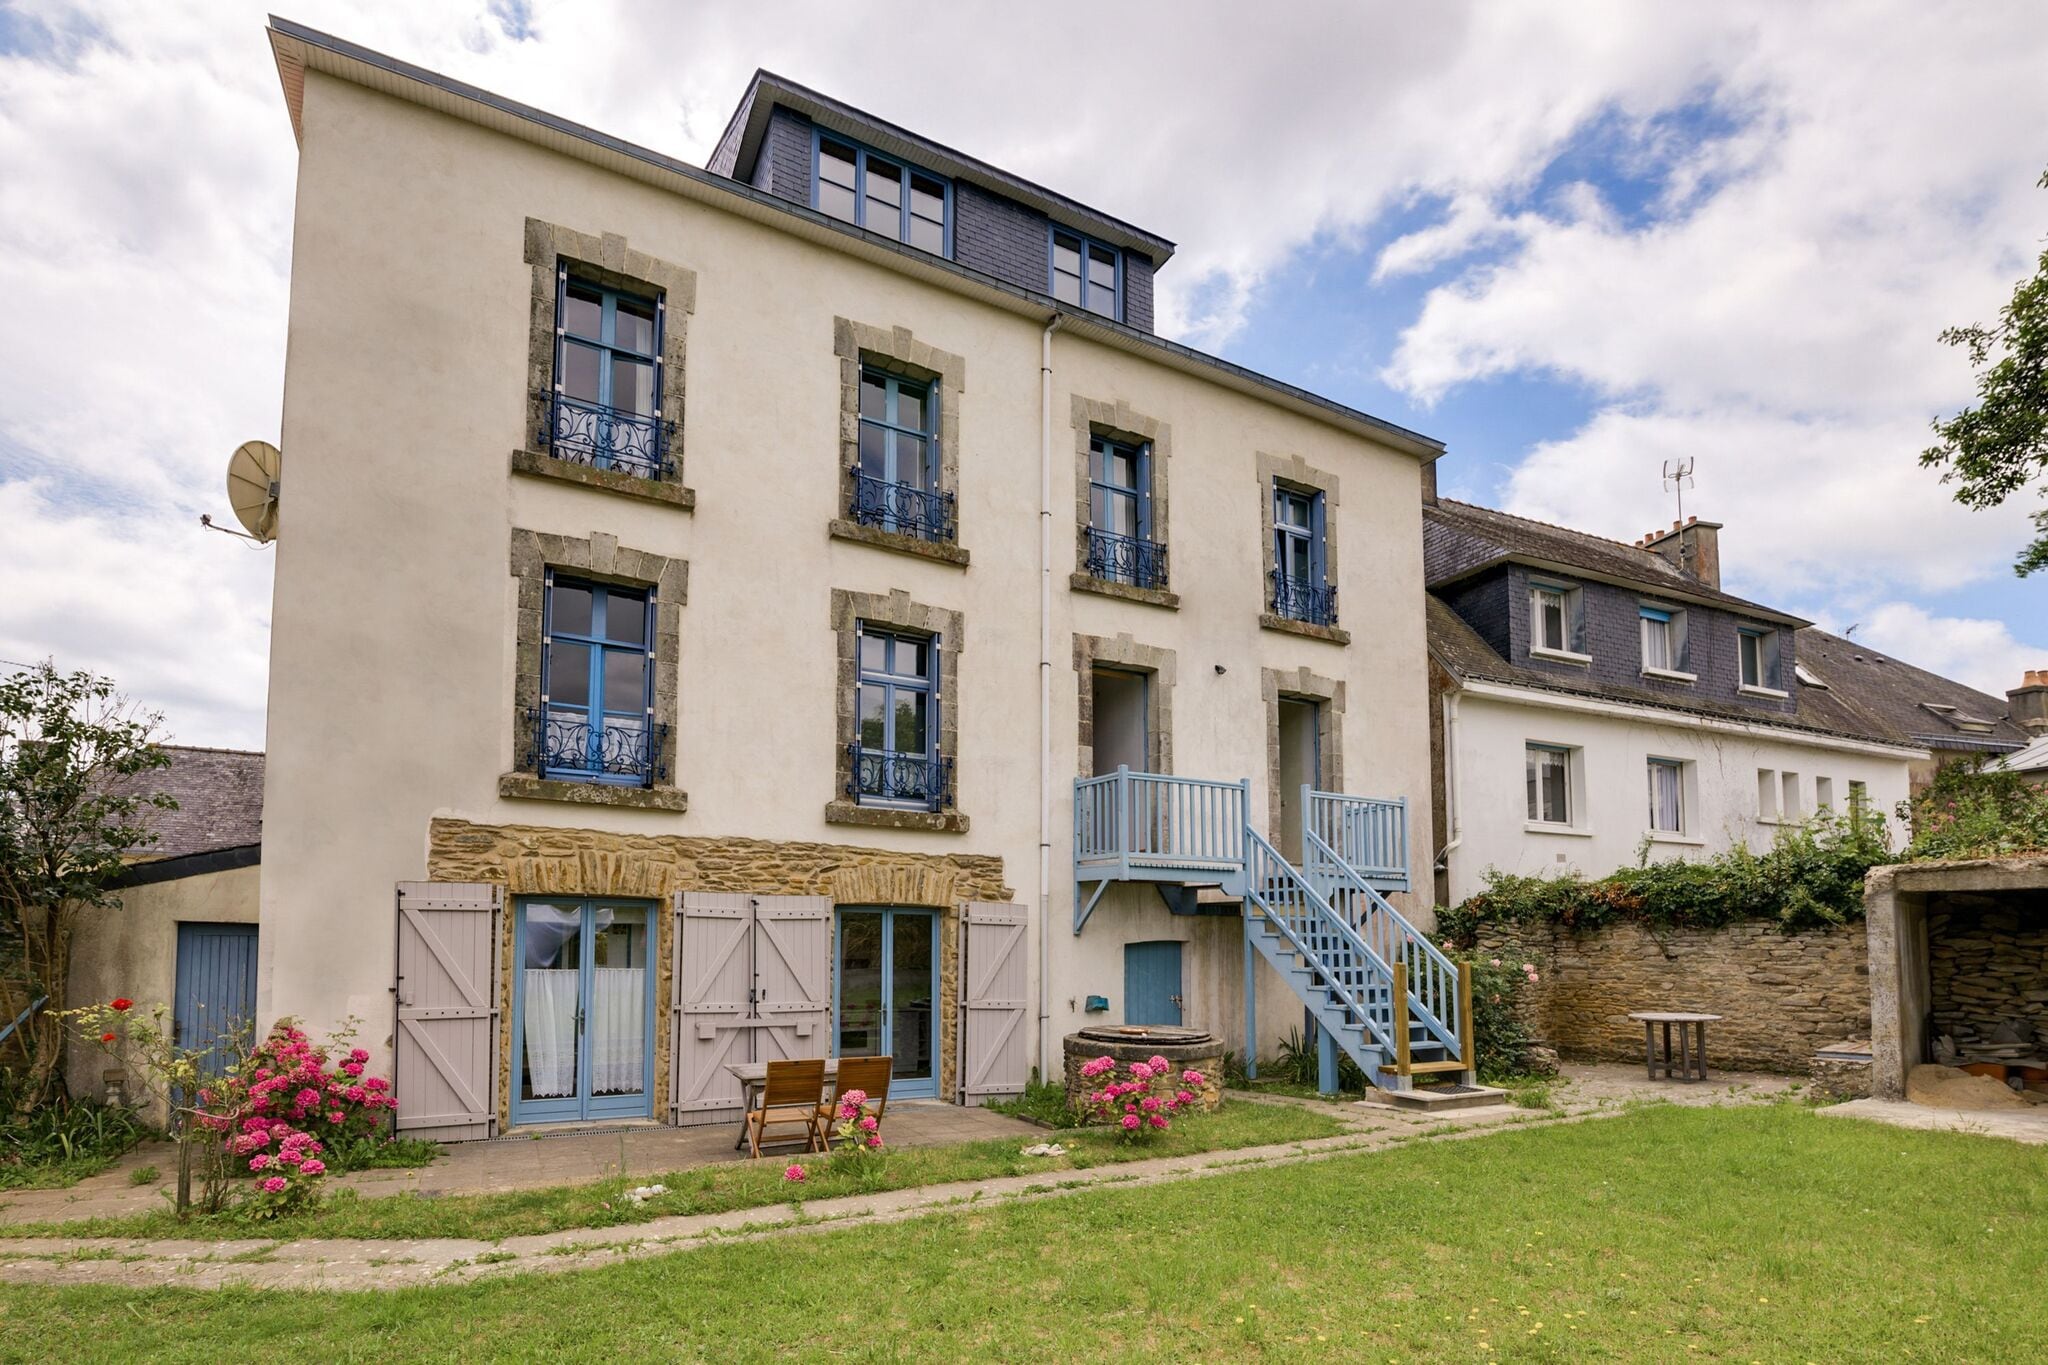 Appartement op ongeveer 100 meter van de oceaan in het zuiden van Bretagne.